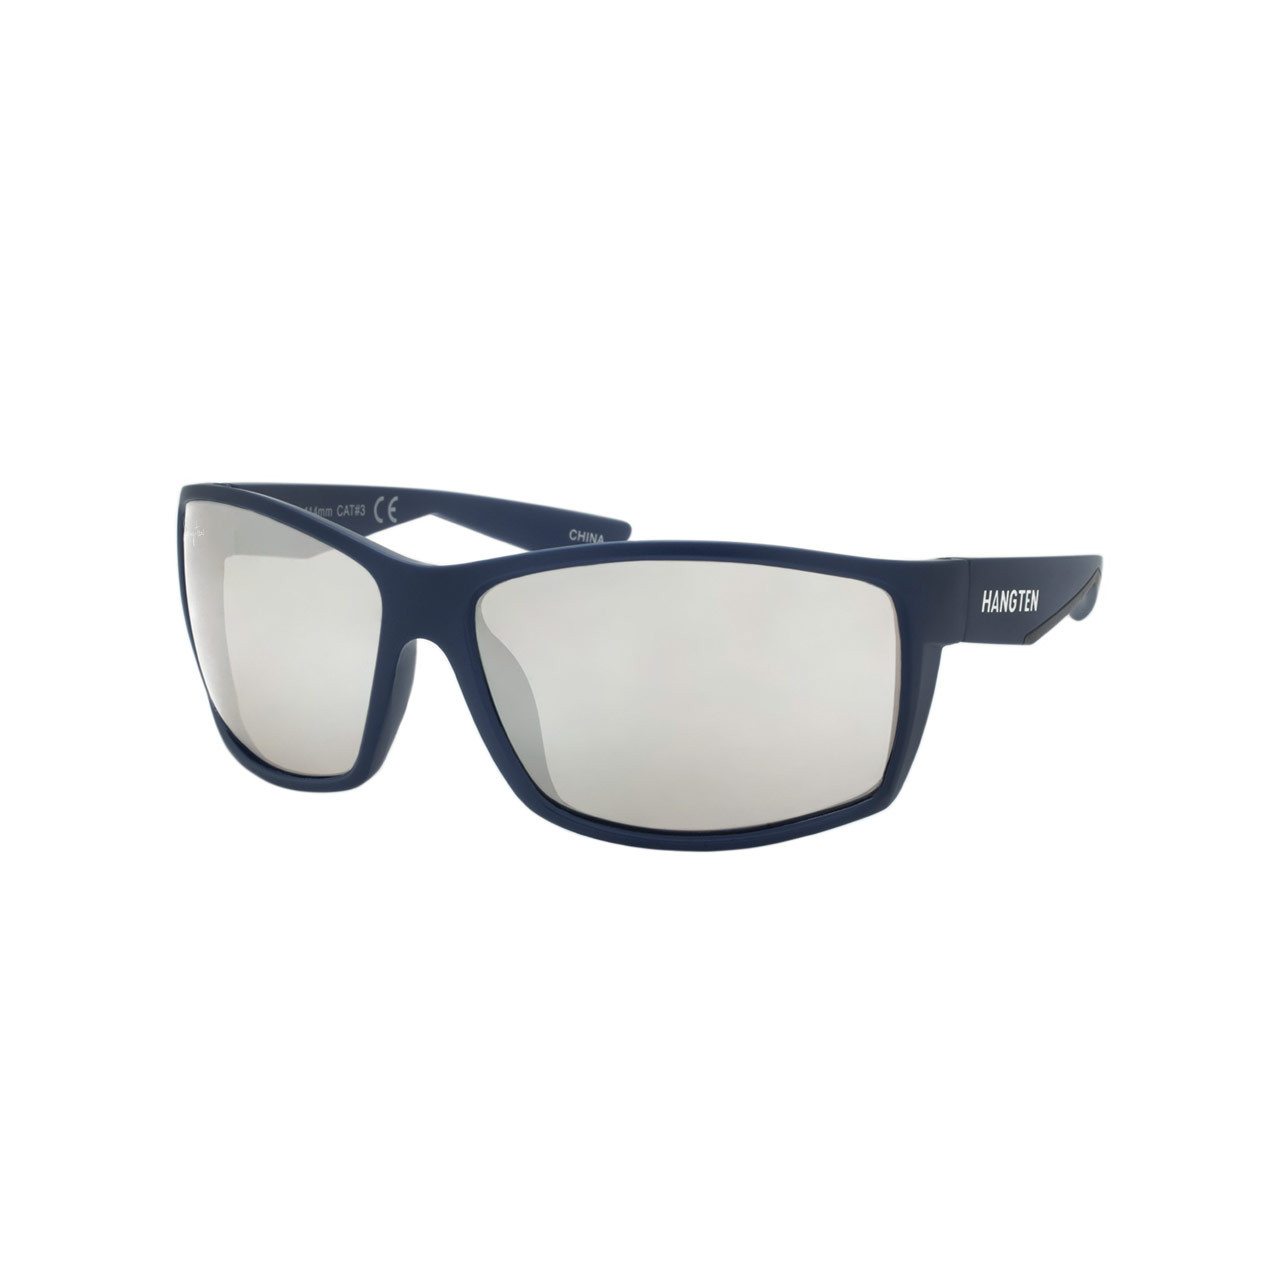 Wholesale Hang Ten Color Polycarbonate UV400 Sport Sunglasses Men